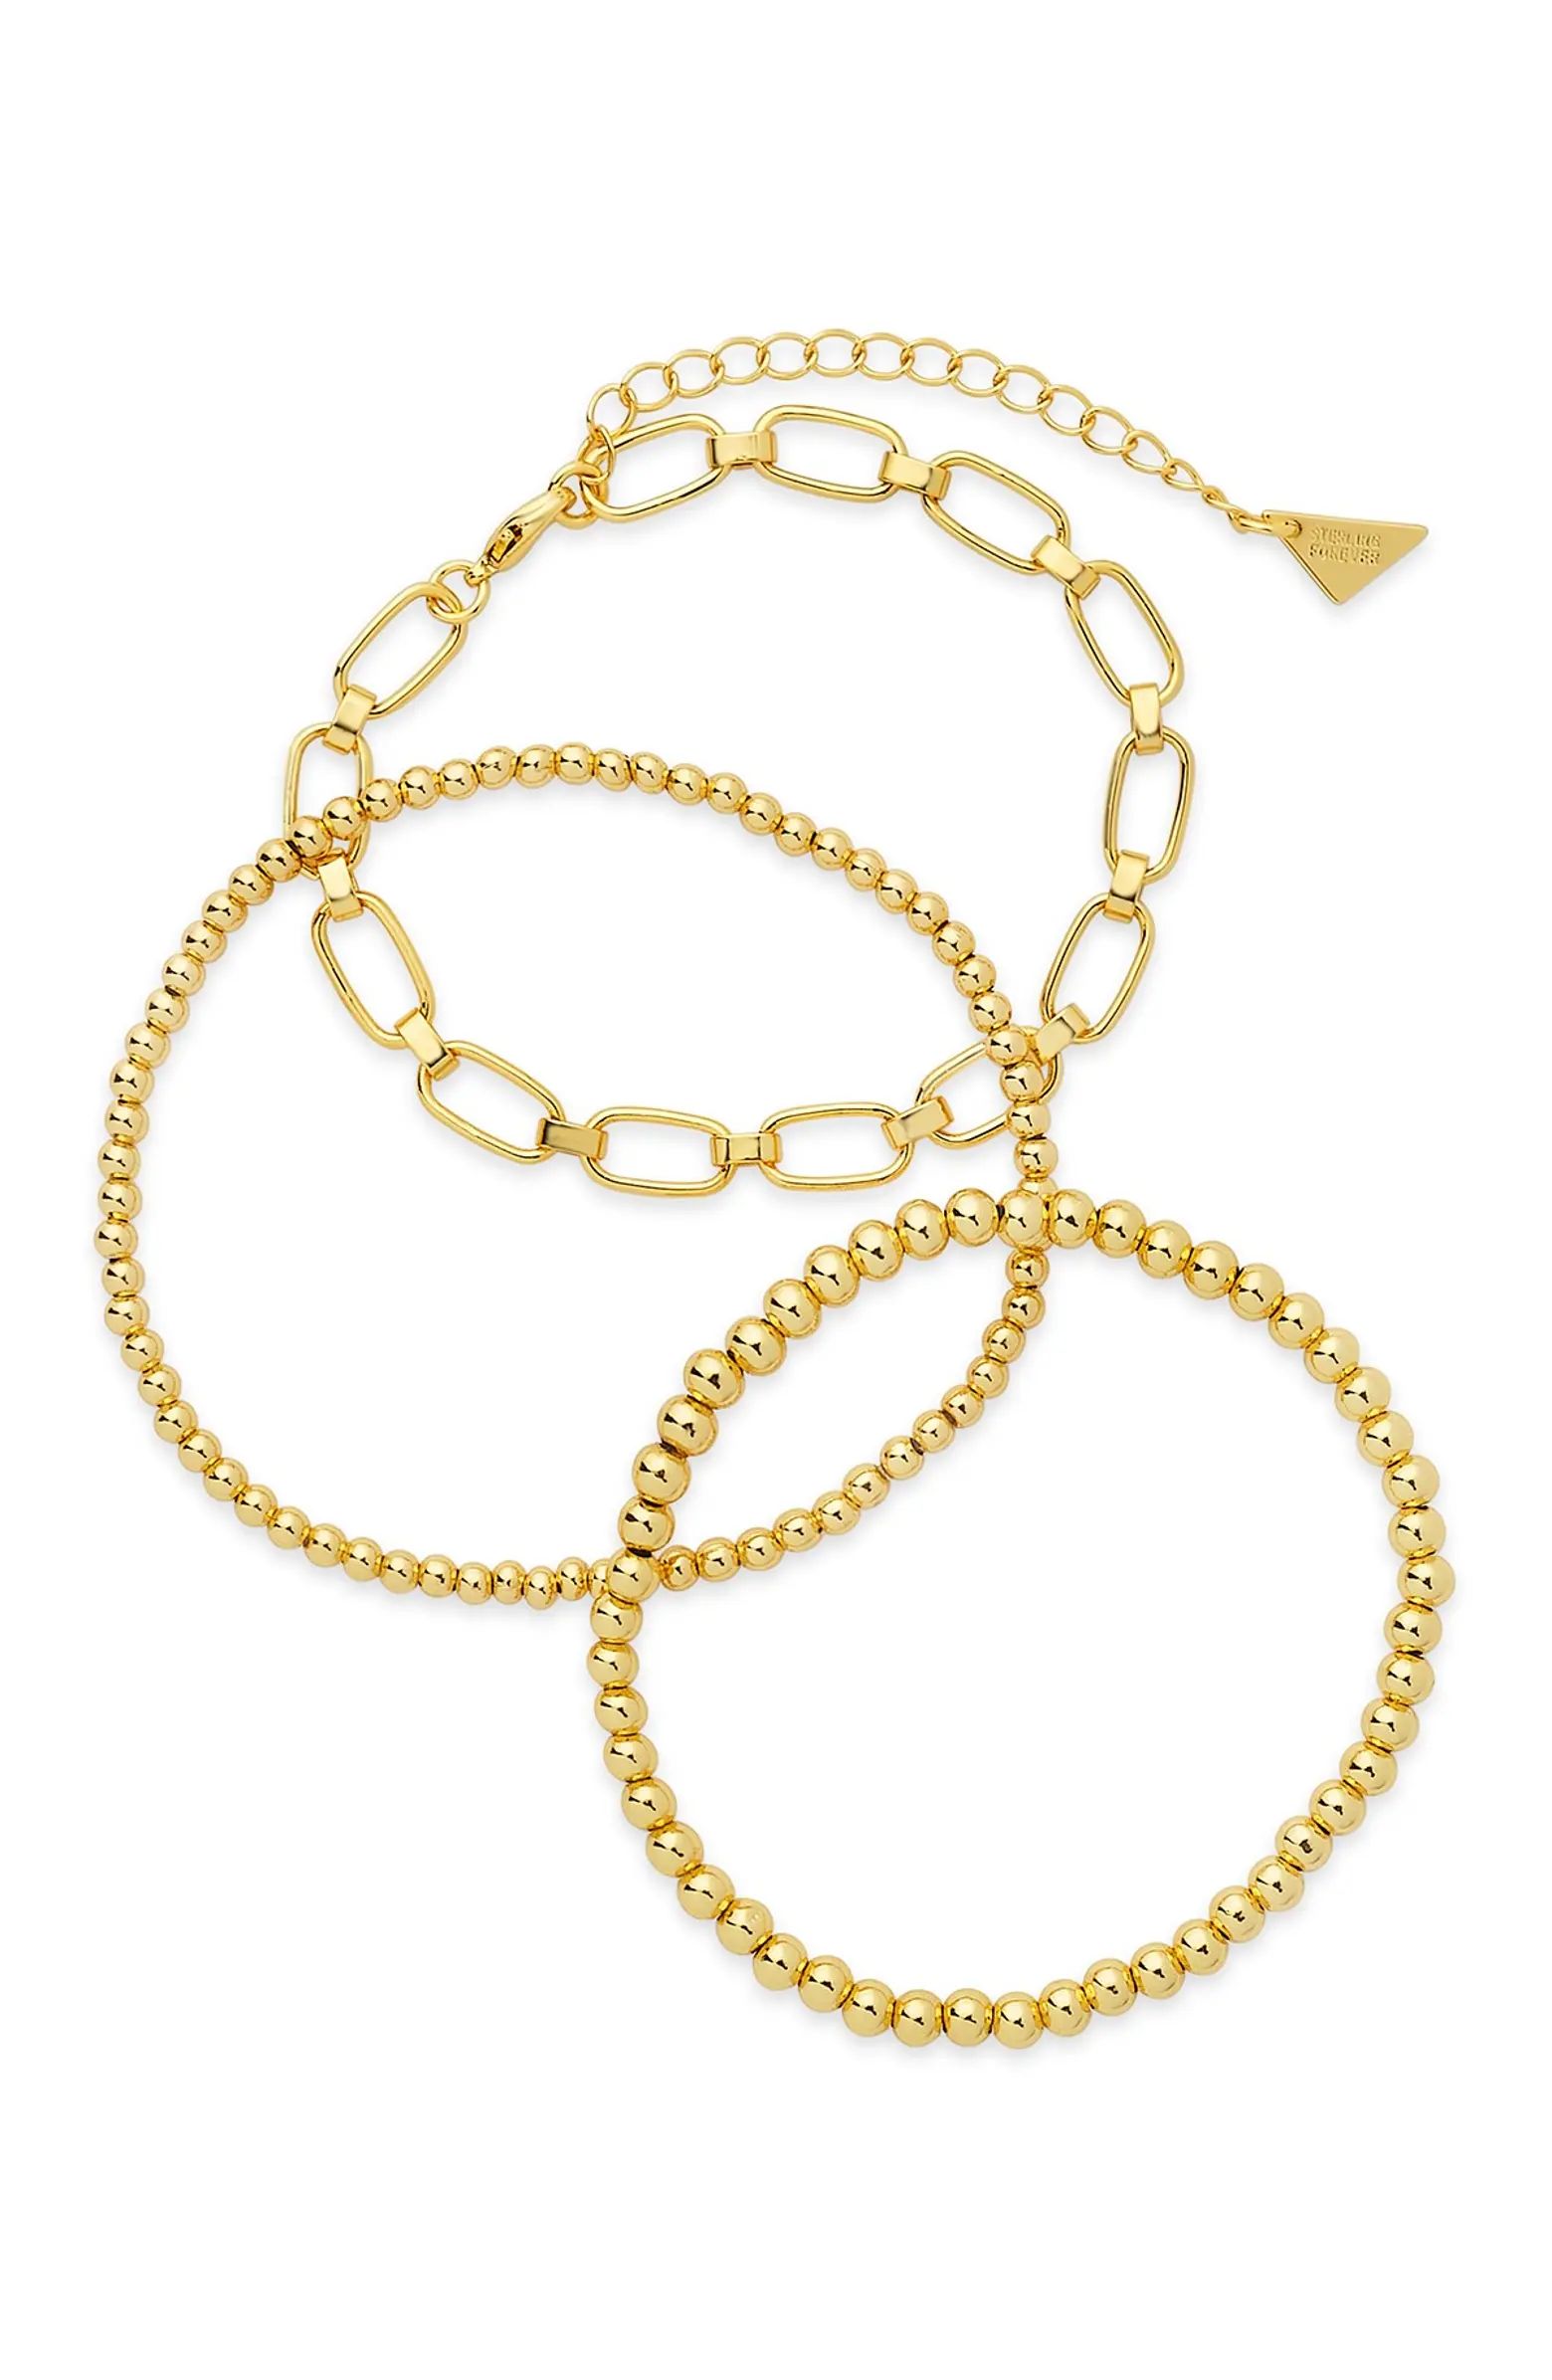 Bead & Link Bracelets - Set of 3 | Nordstrom Rack